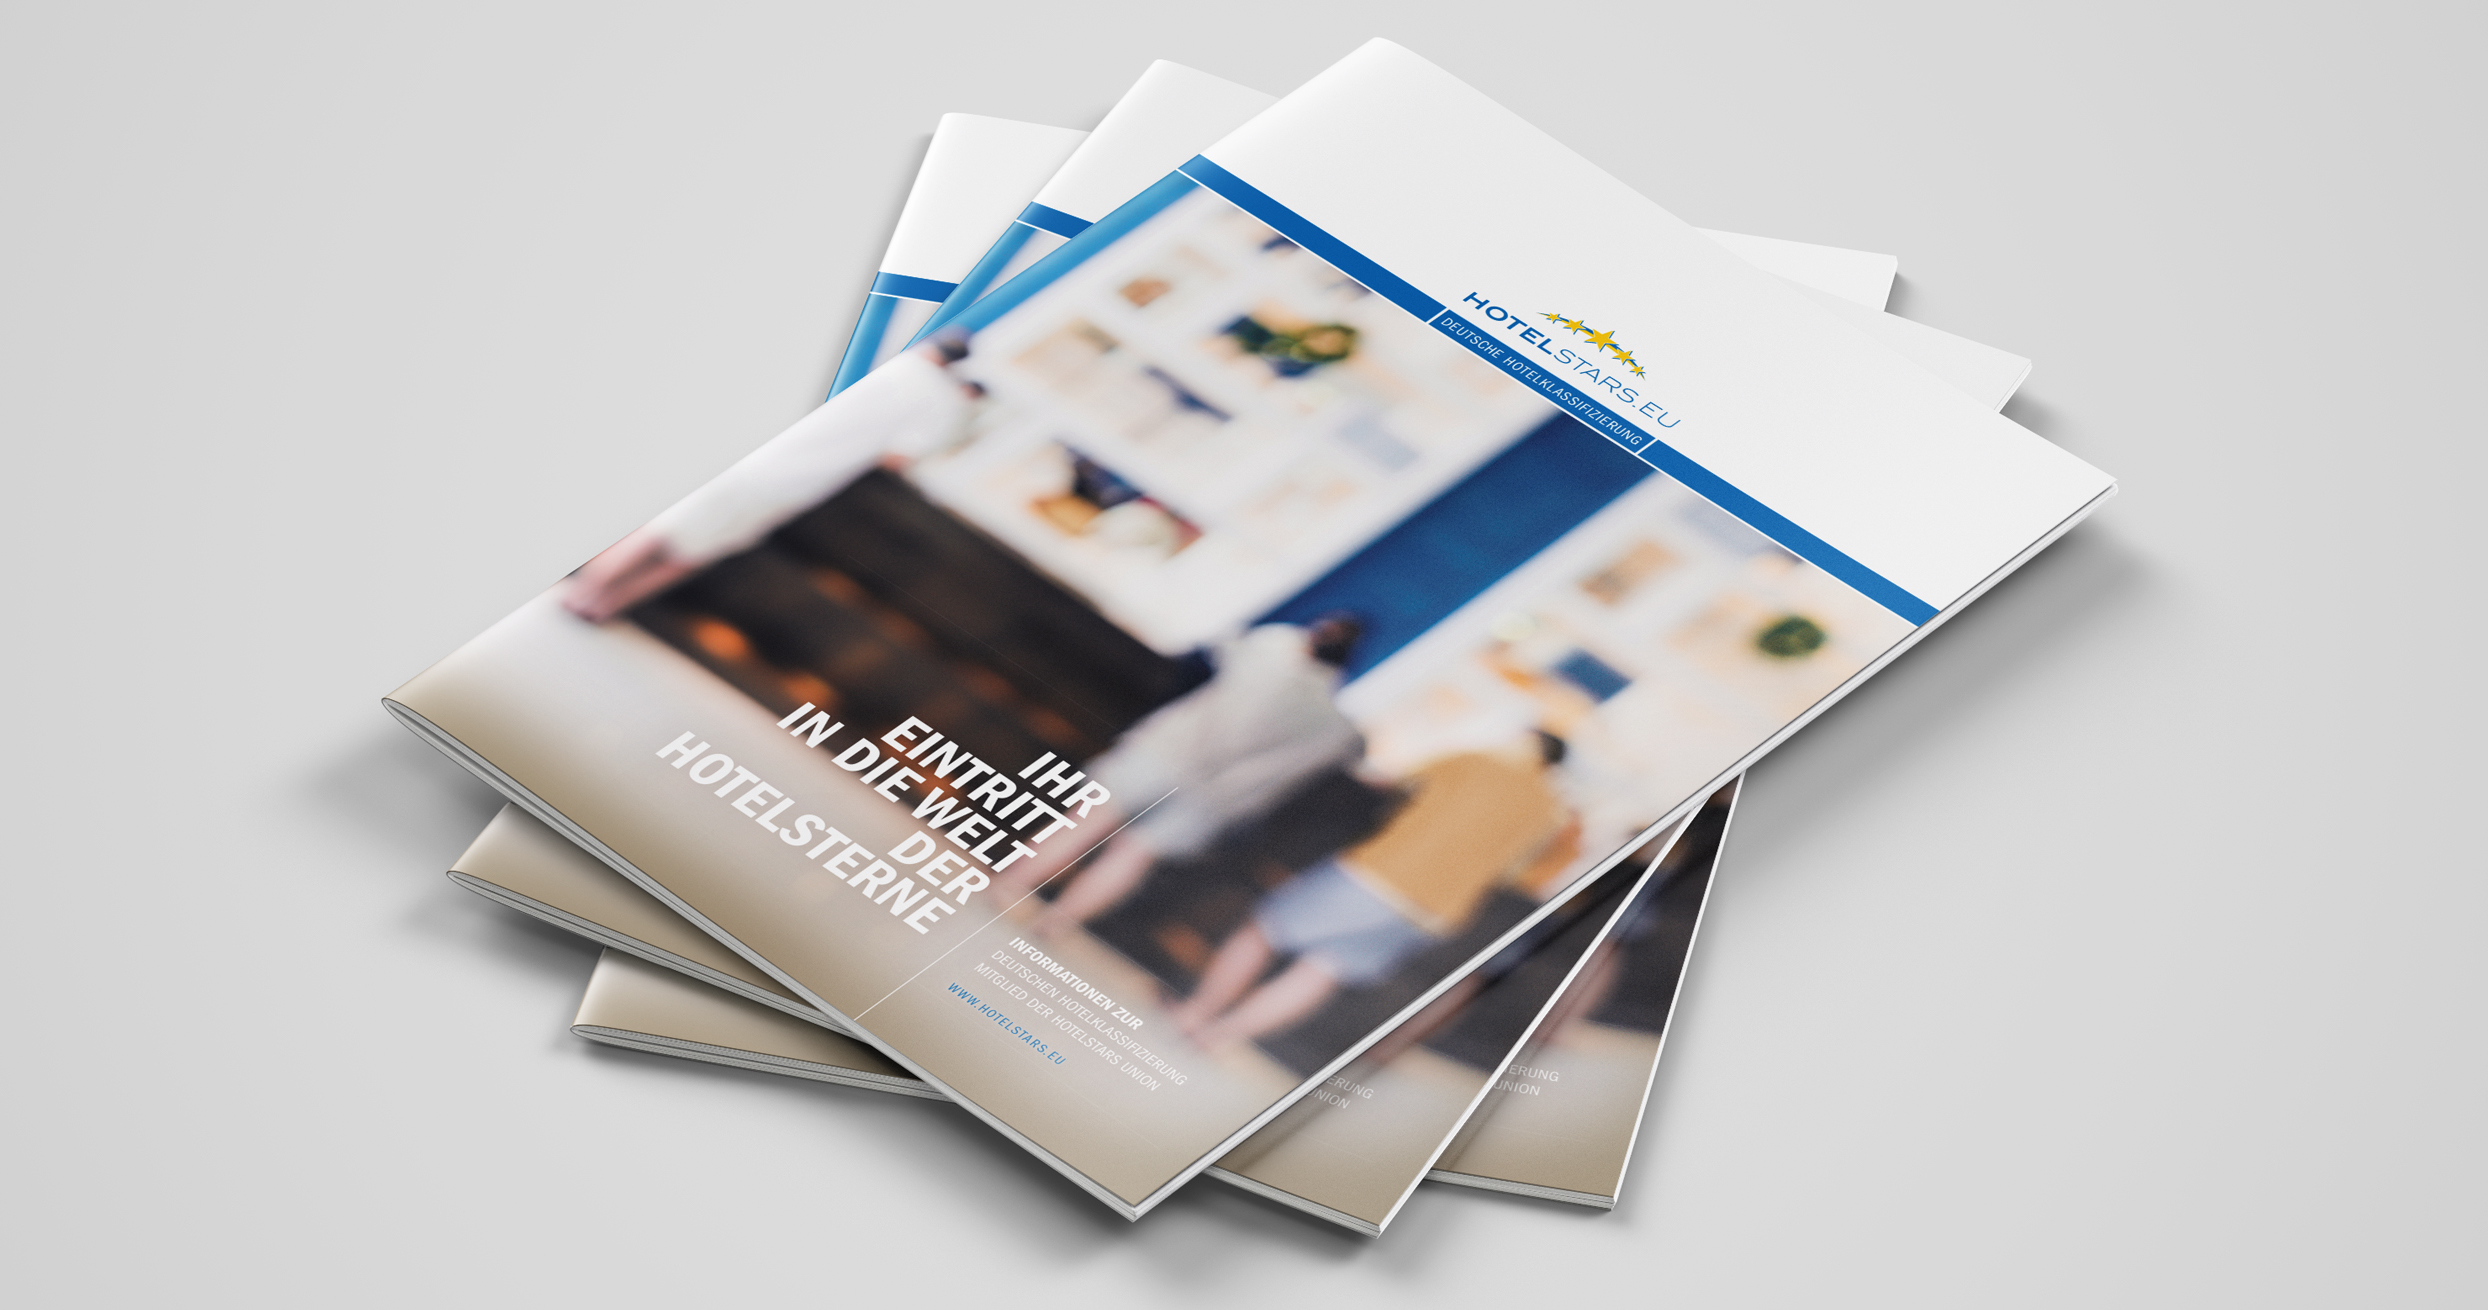 elbgraphen Full Service Werbeagentur konzipiert Broschüre und Flyer für Hotelstars EU